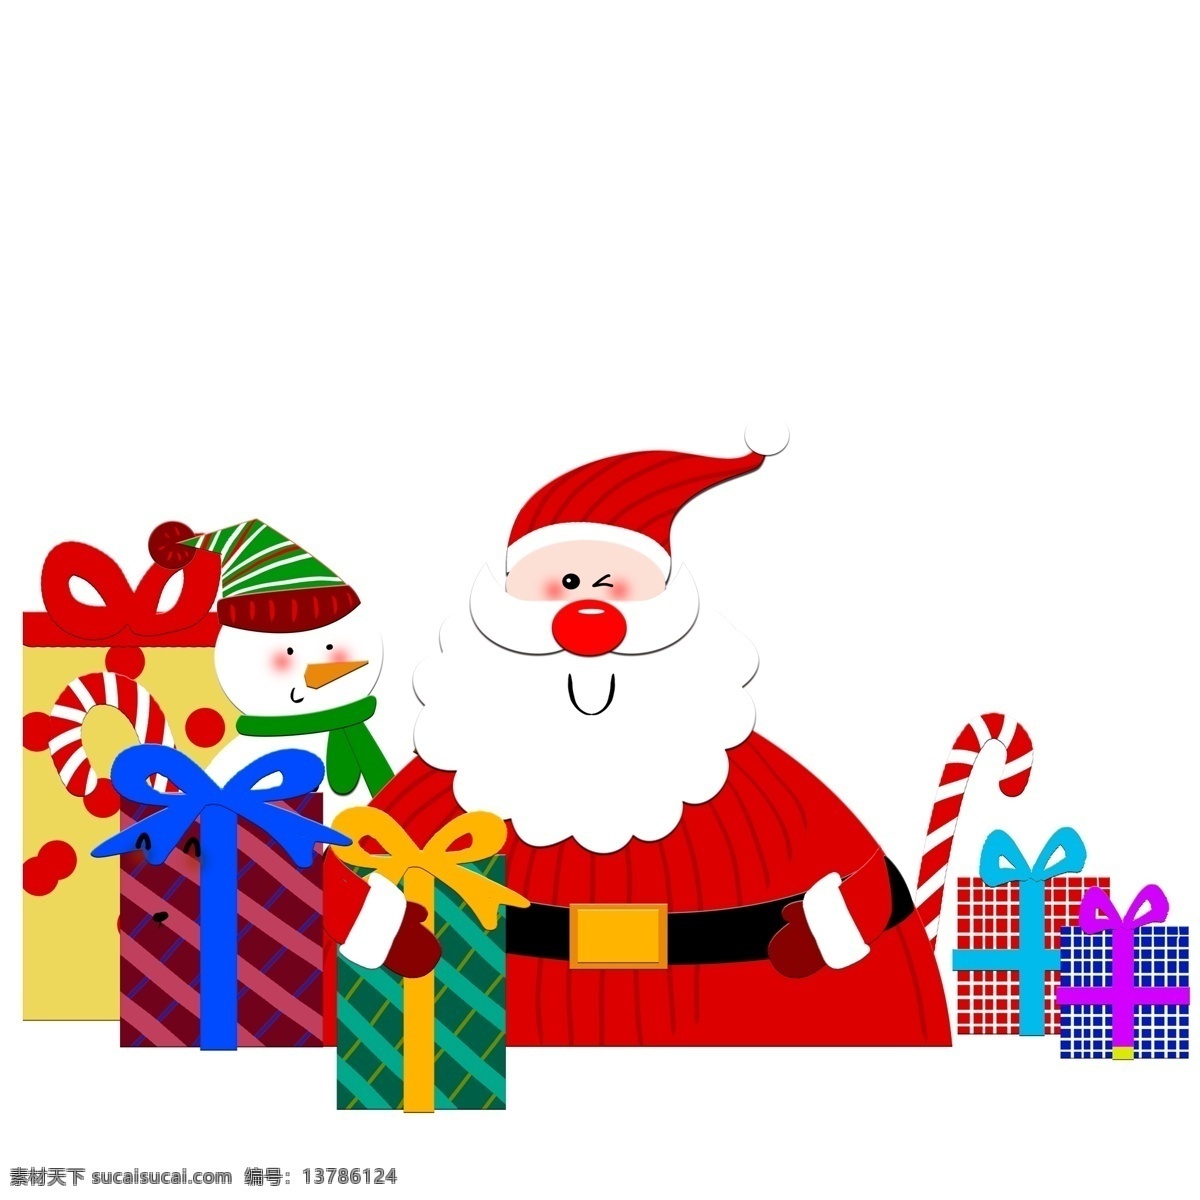 圣诞老人 圣诞 雪人 剪纸 风 清新 扁平化 礼盒 礼物 插画 卡通 彩色 圣诞老爷爷 拐杖糖果